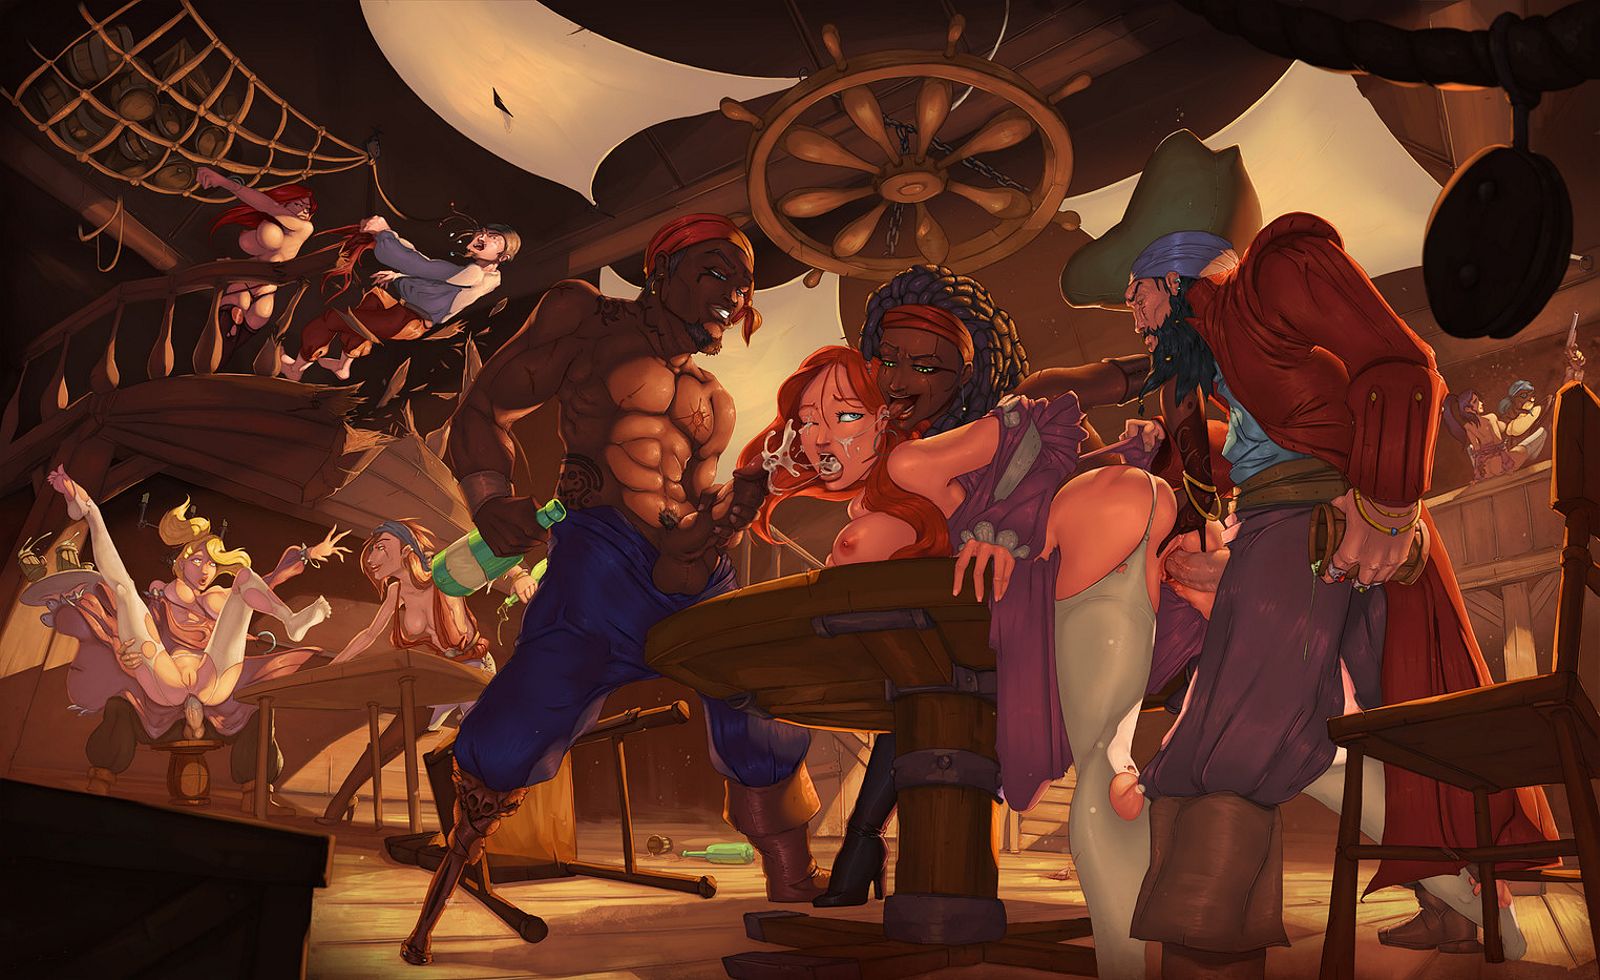 пираты развлекаются с девицами в припортовом кабаке, картинка порно аниме